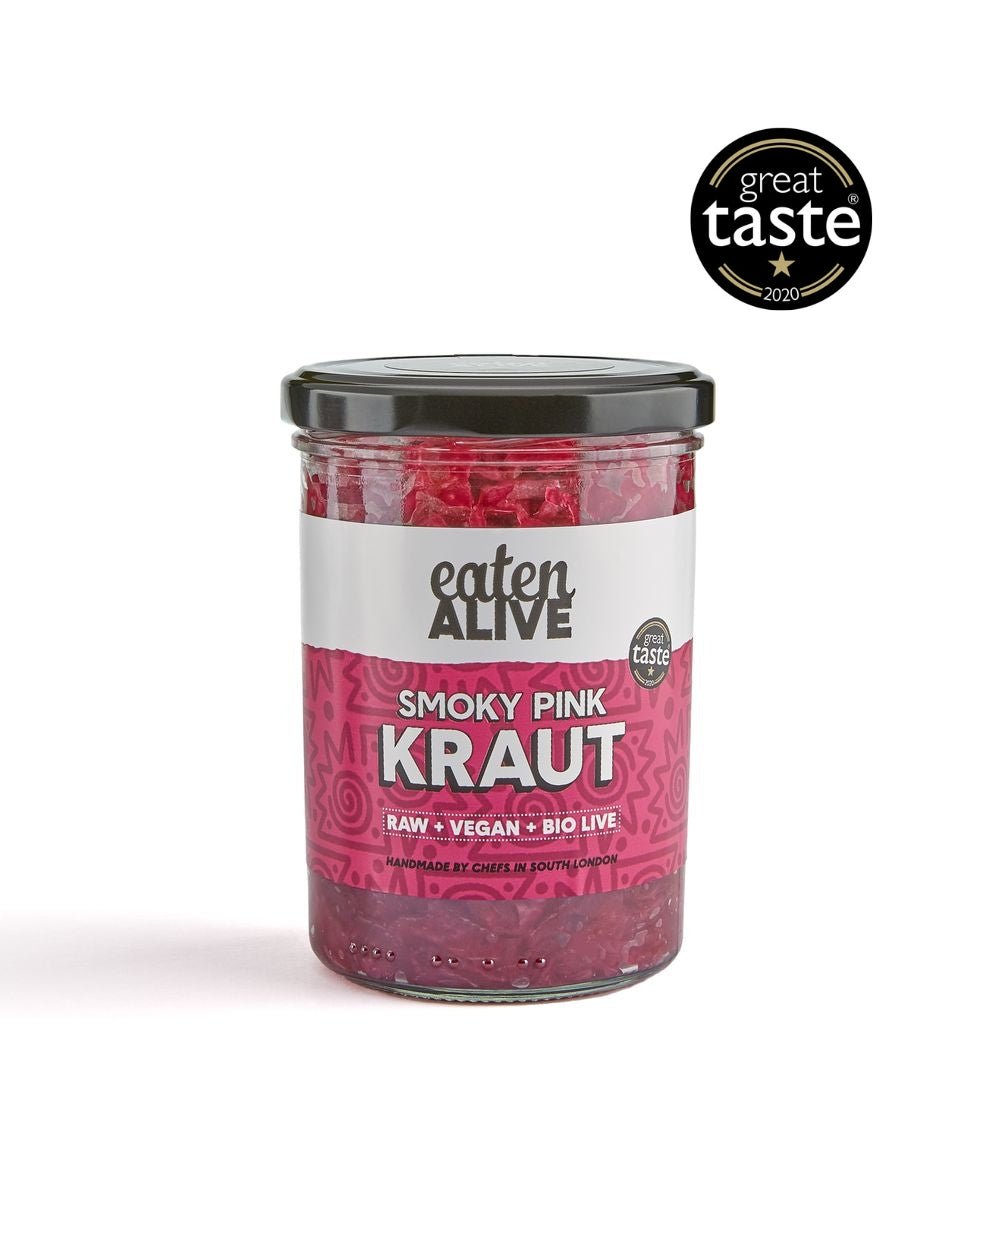 Smoky Pink Kraut – Eaten Alive